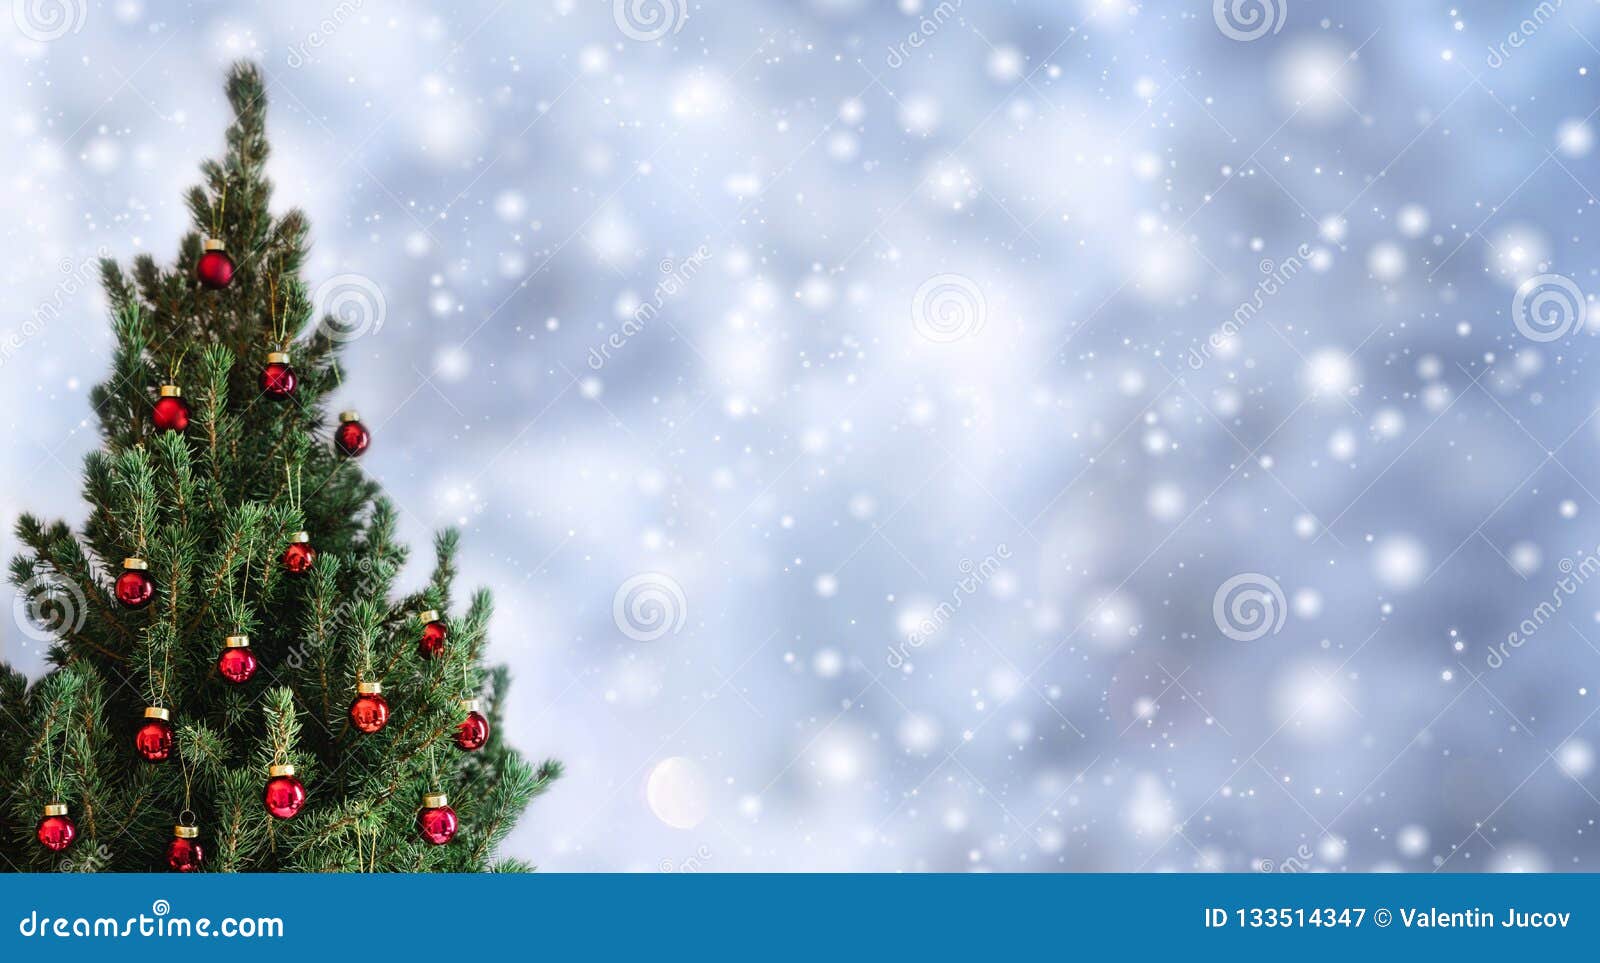 Cây Giáng Sinh: Cây Giáng sinh là biểu tượng không thể thiếu trong mỗi gia đình, mỗi không gian trang trí trong mùa lễ hội Giáng sinh. Cùng chiêm ngưỡng những mẫu cây Giáng sinh đa dạng, độc đáo, sáng tạo được trang trí bởi những loại phụ kiện khác nhau để tạo nên một không gian thật lung linh.